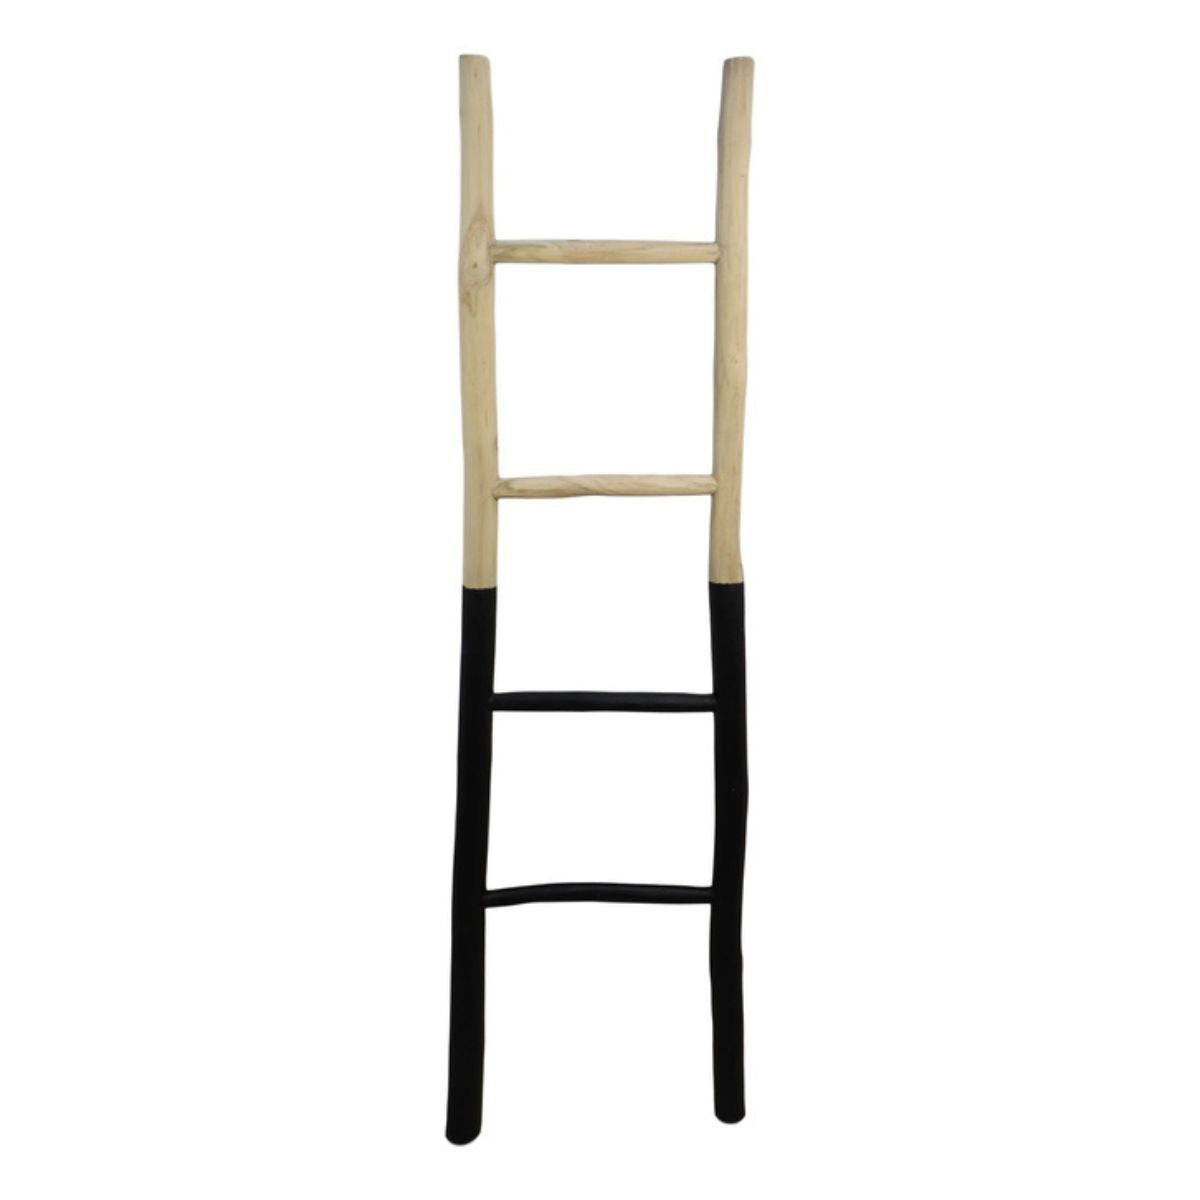 Stijlvolle Decoratieve ladder - Teak met zwart accent - 45x4x150 cm - Voor een moderne touch in huis!